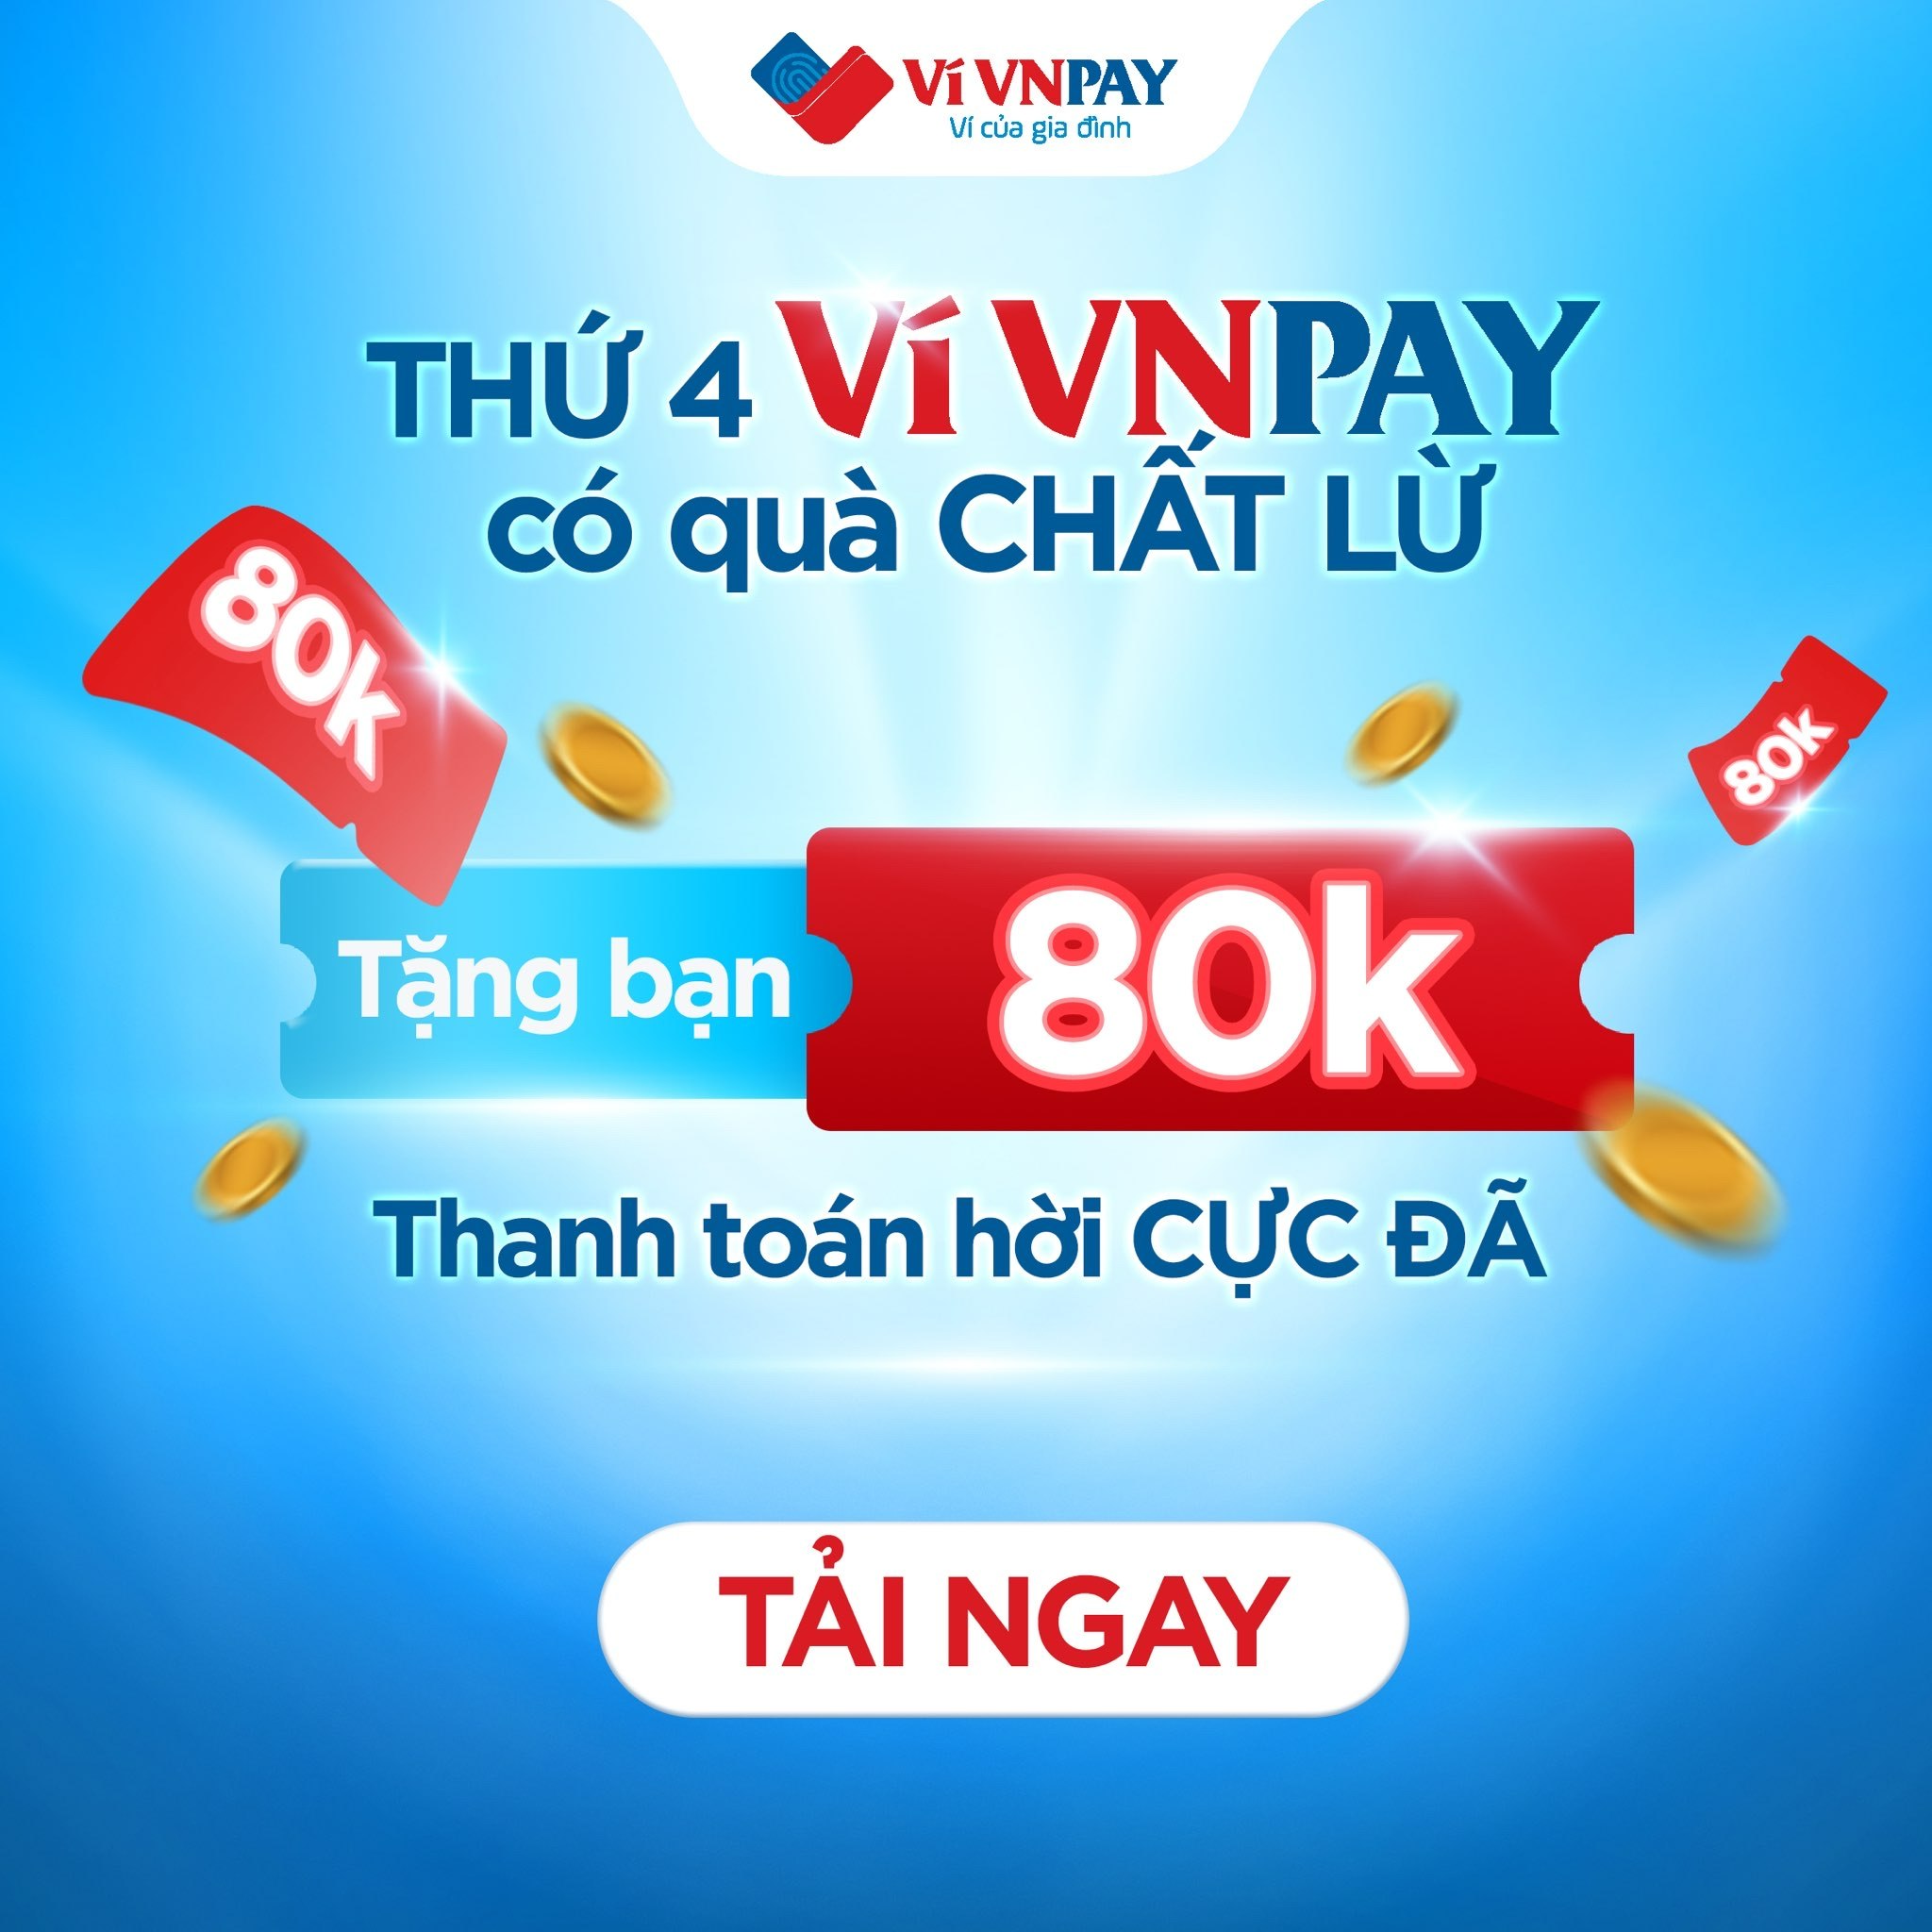 “Bao” giá cực đã: Giảm 80.000 đồng cho mọi dịch vụ thanh toán trên ví VNPAY